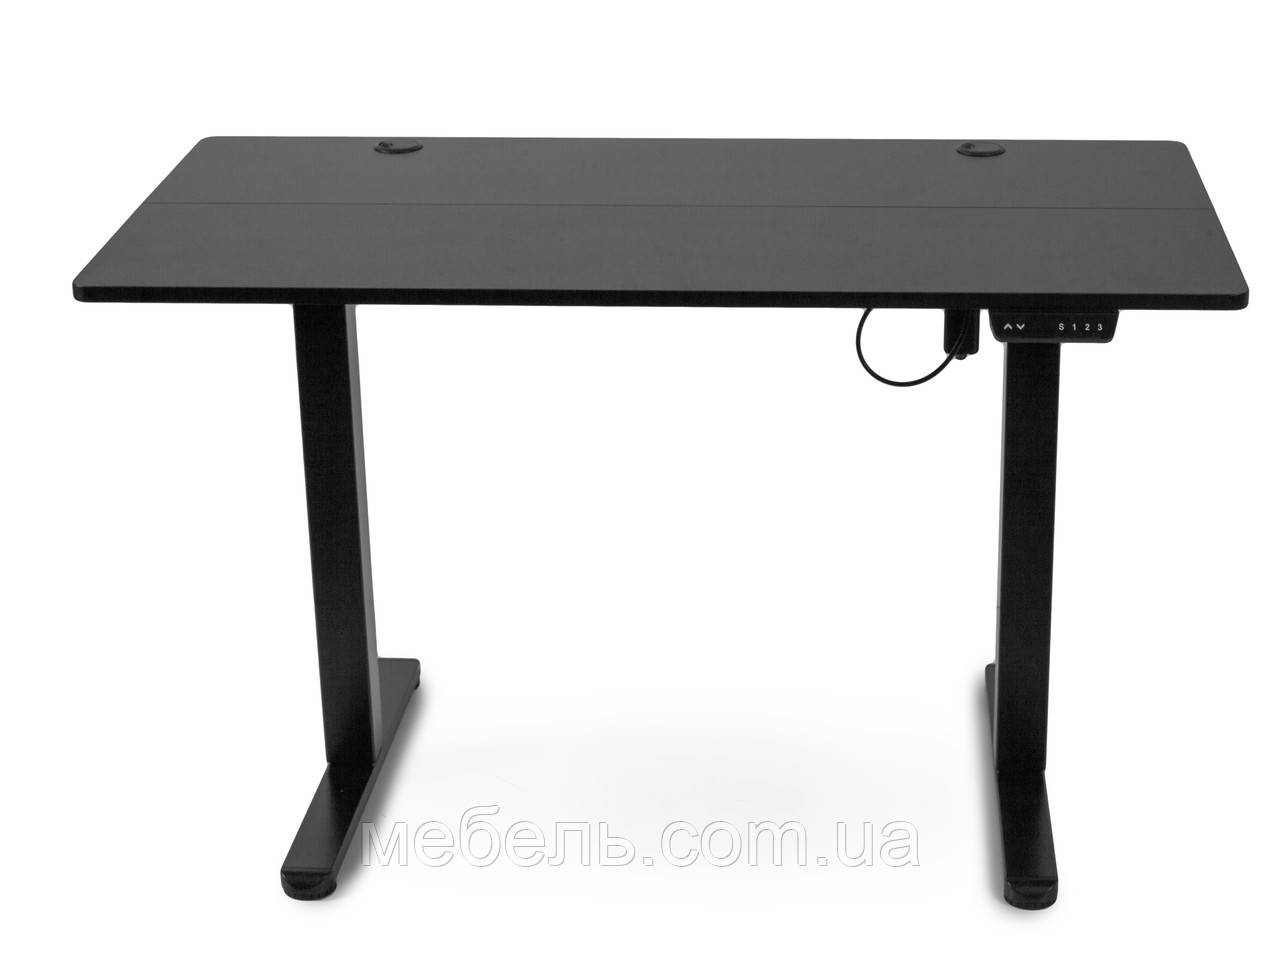 Регульований стіл Barsky StandUp black 1200*600 BST-01